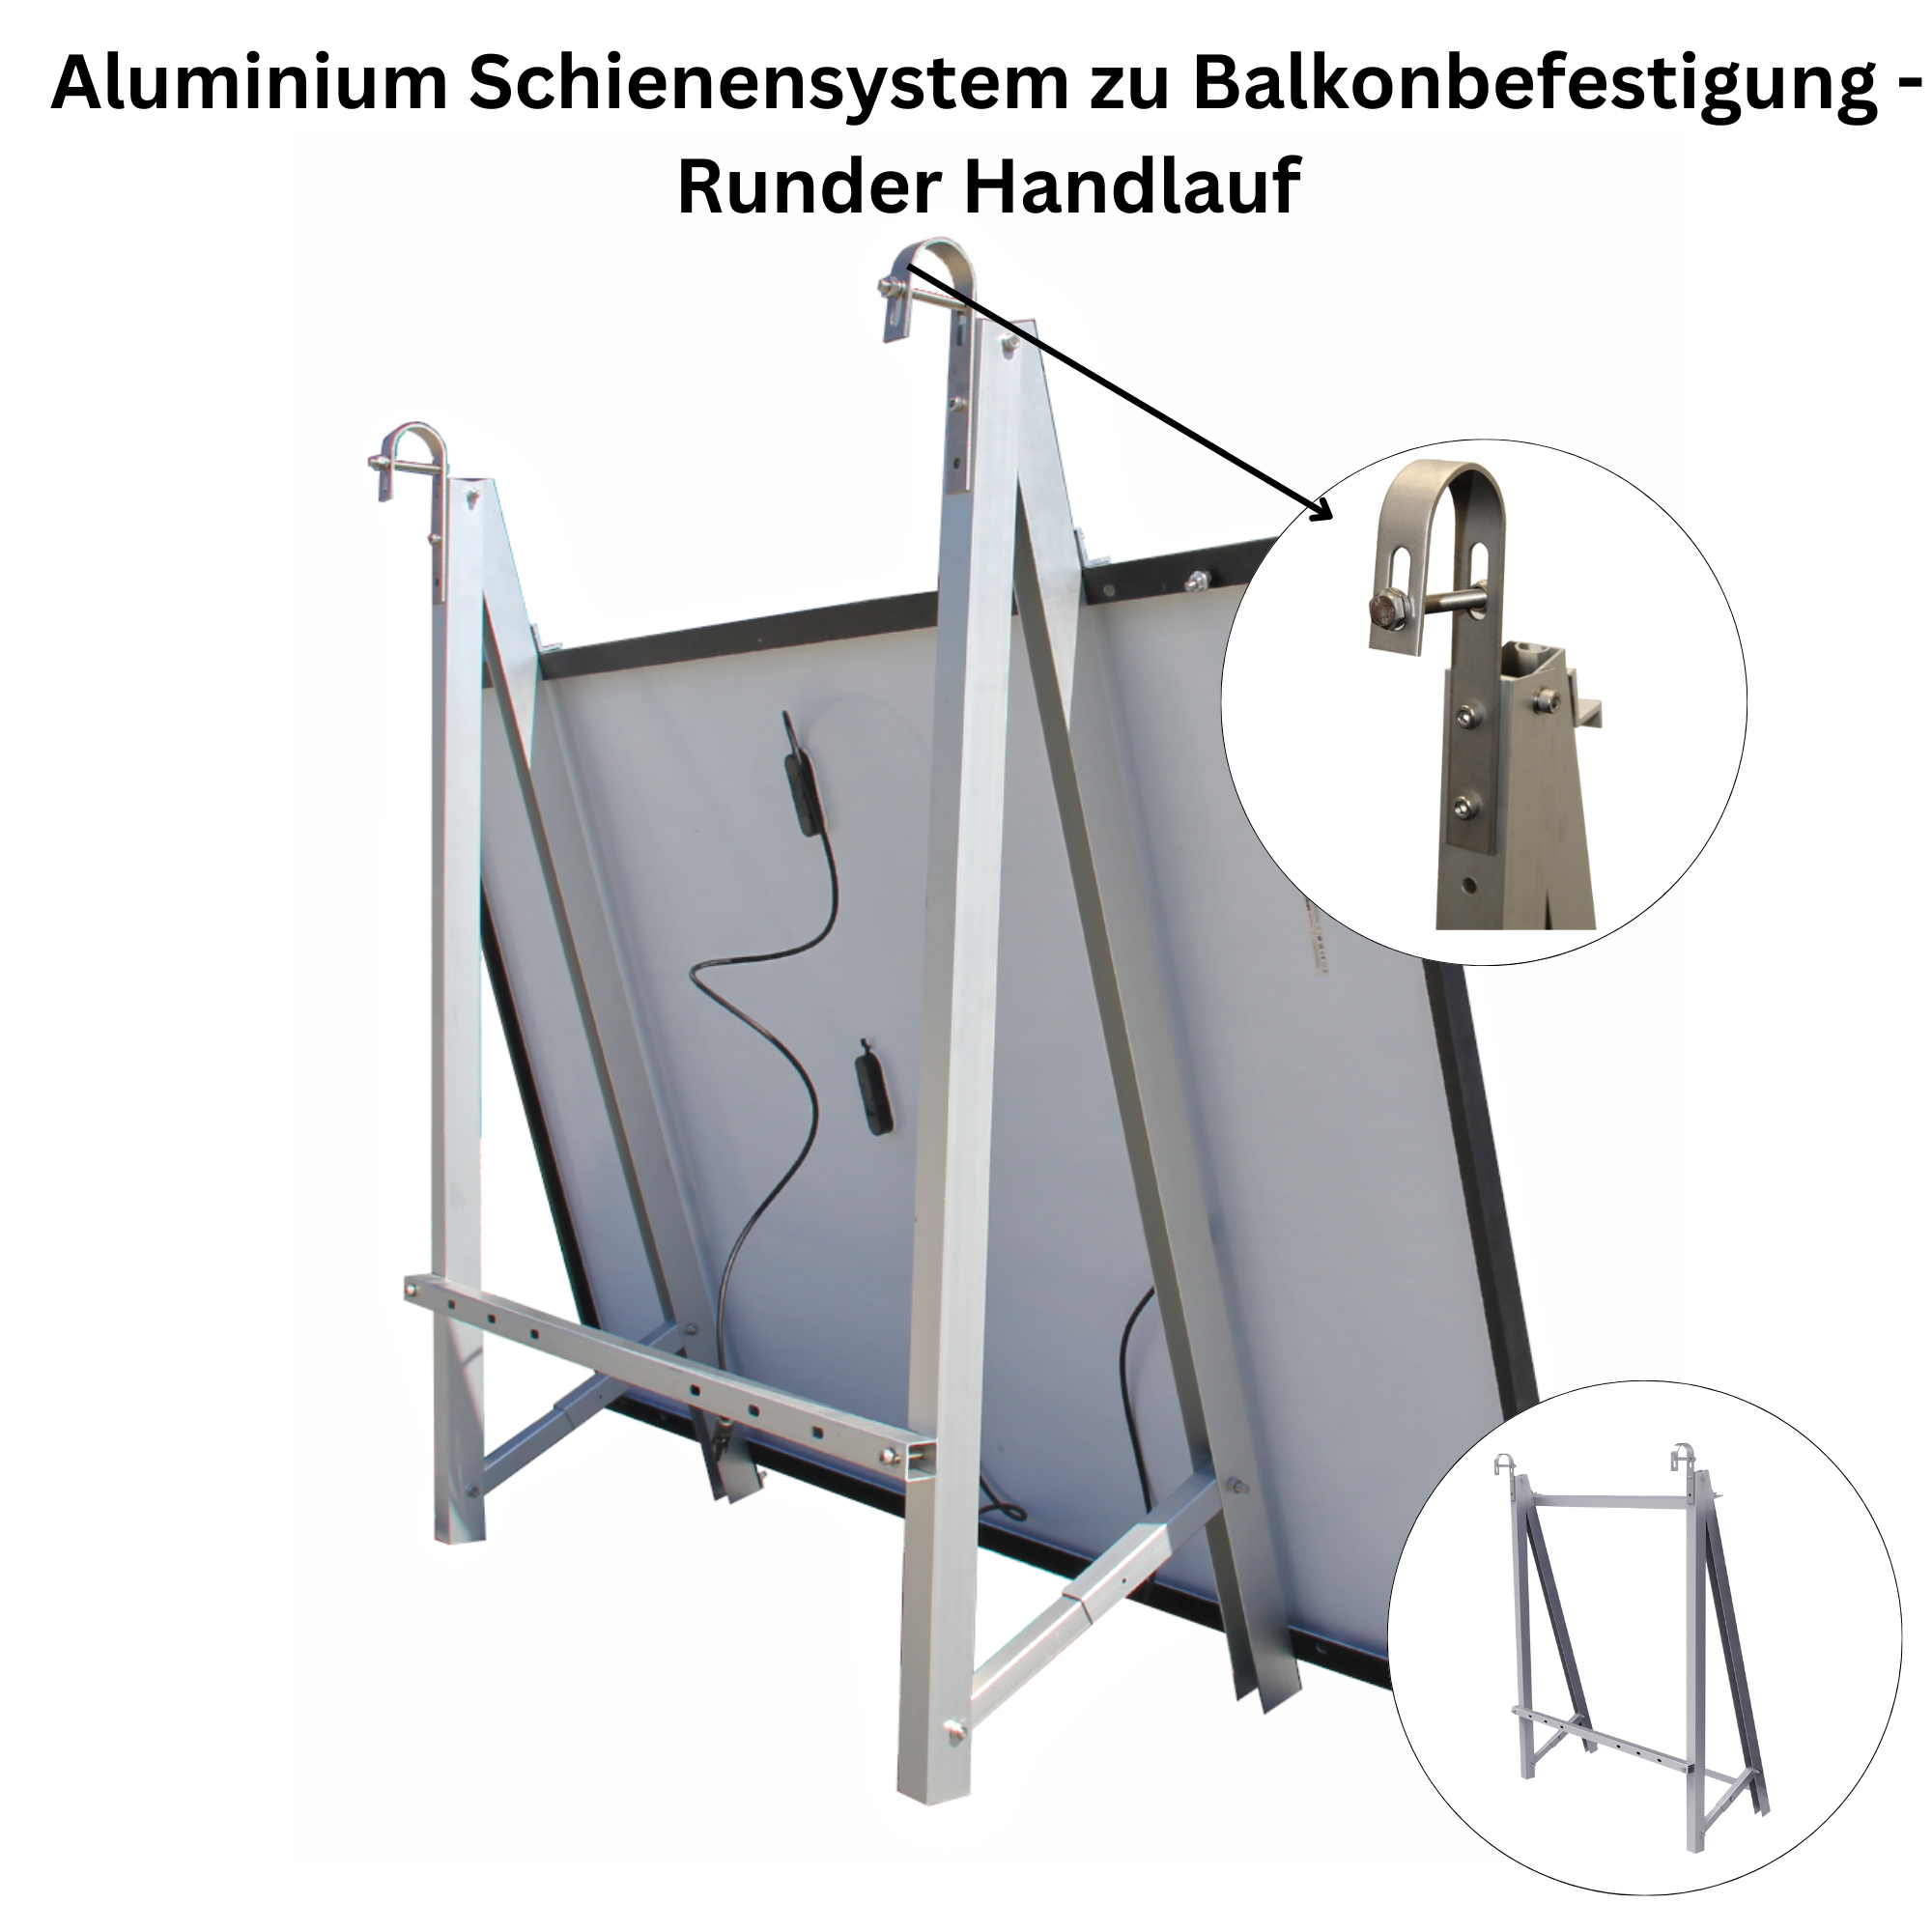 Aluminium Schienensystem zu Balkonbefestigung-Runder Handlauf